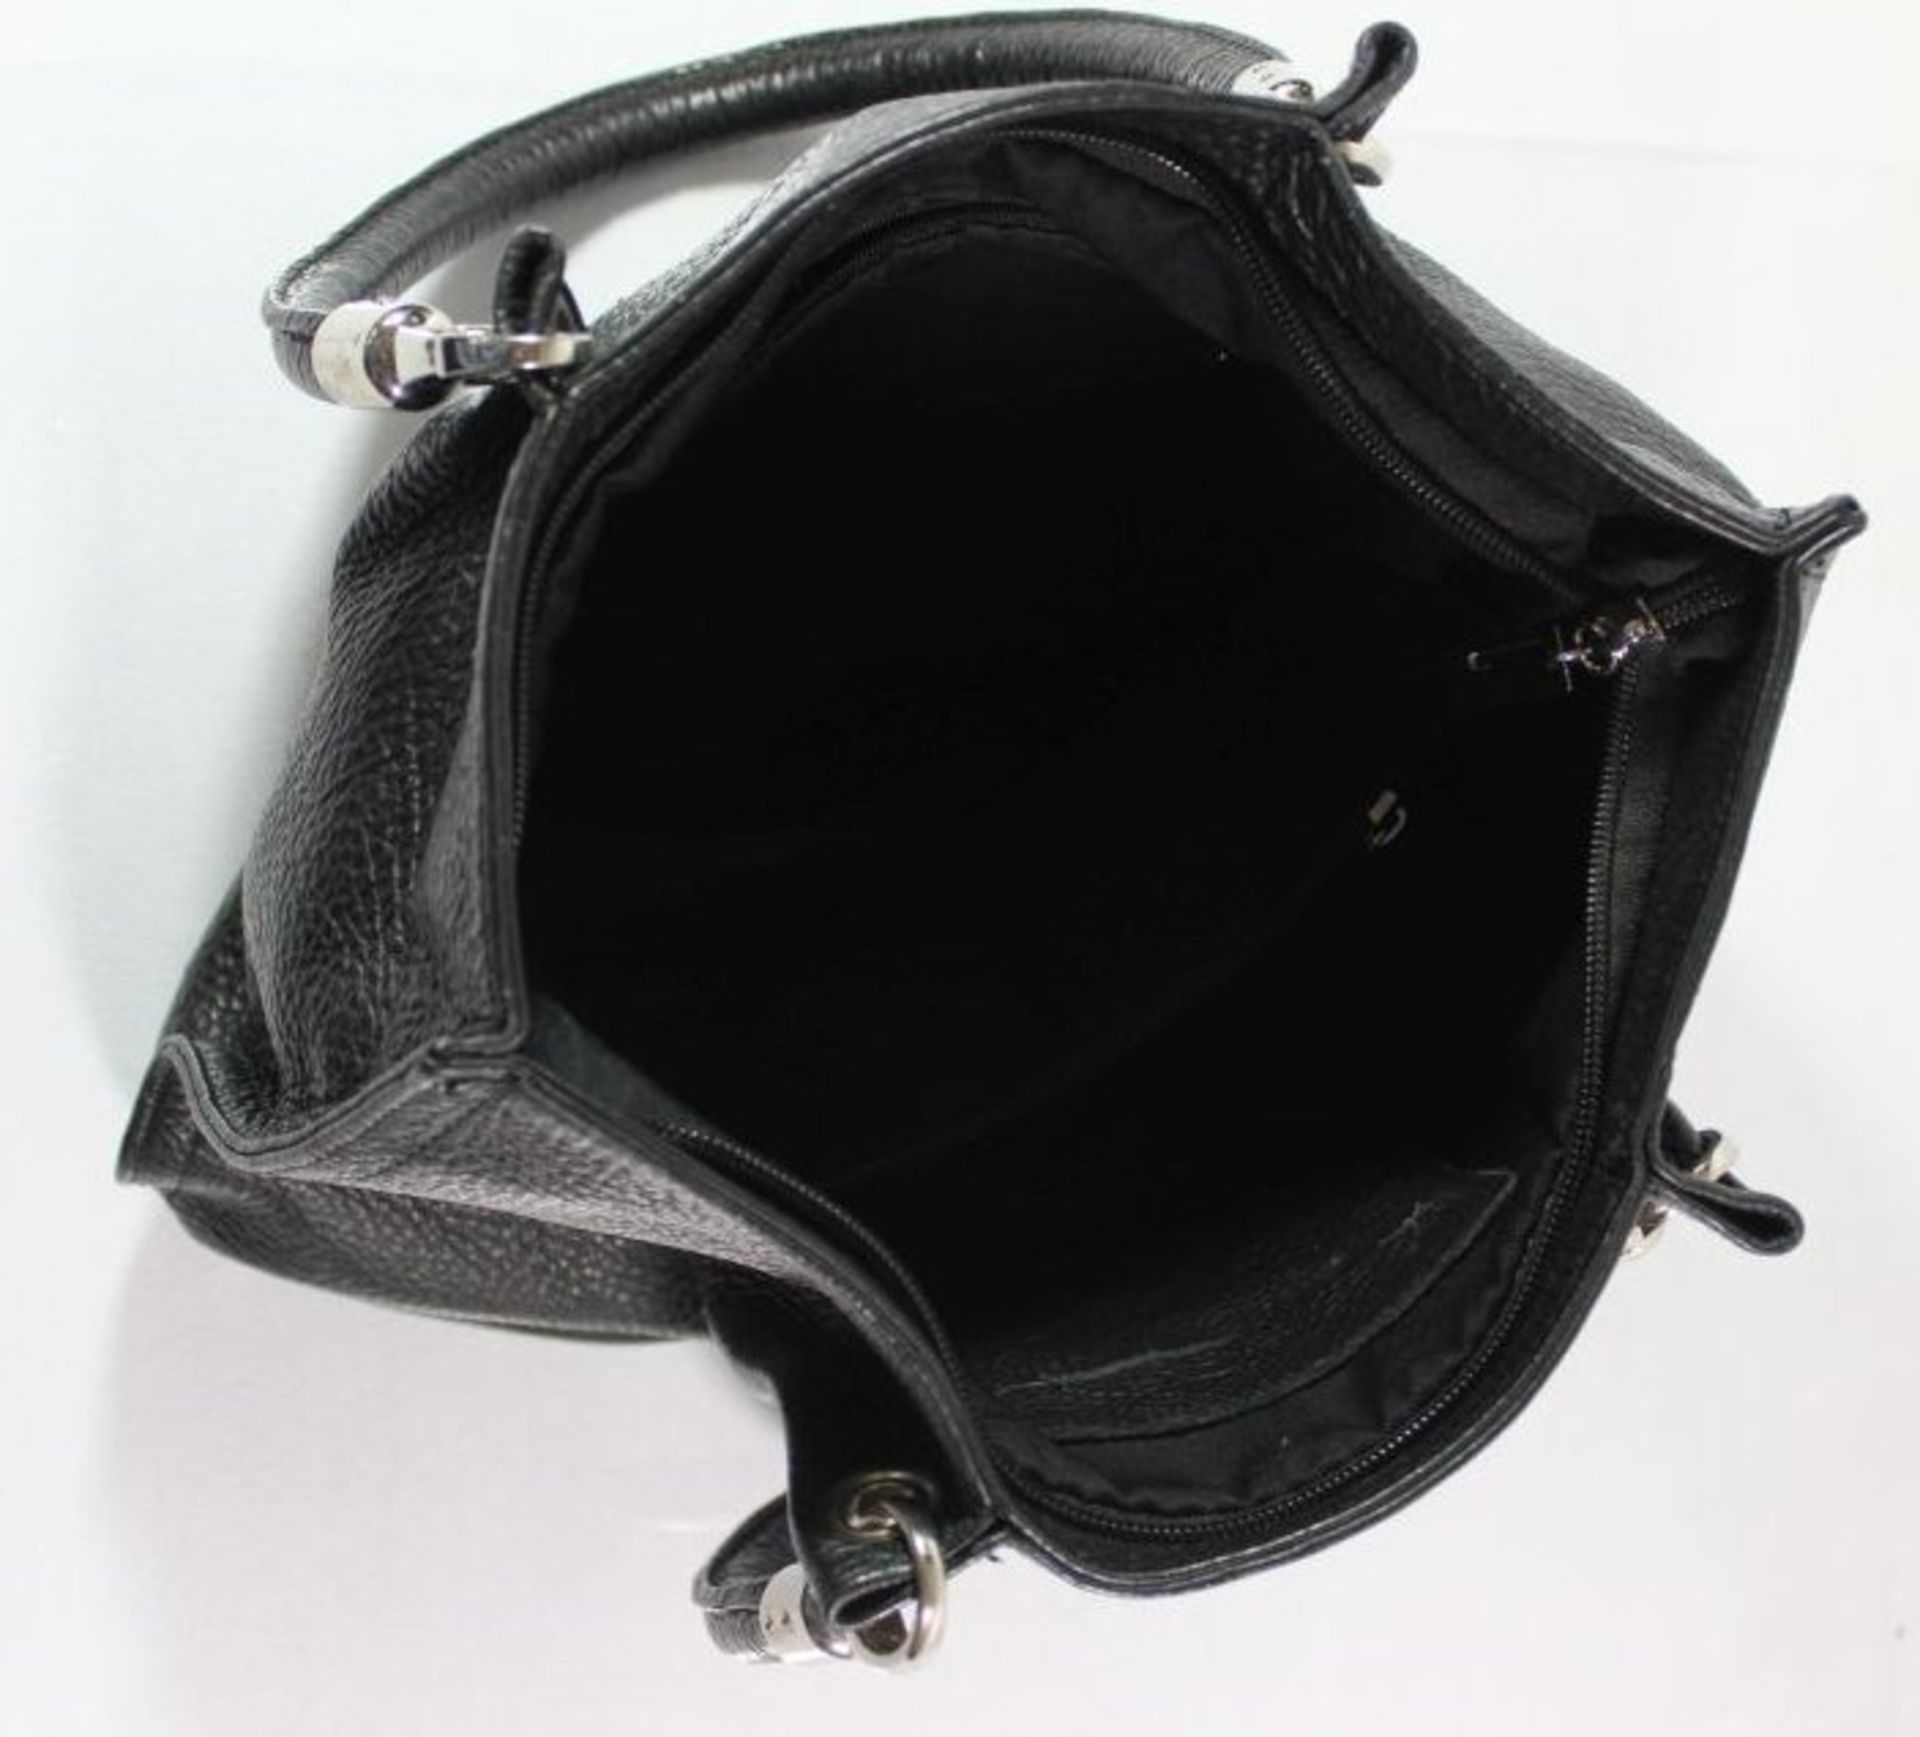 Damen-Handtasche, schwarzes Leder, 22 x 35cm. - Bild 3 aus 3